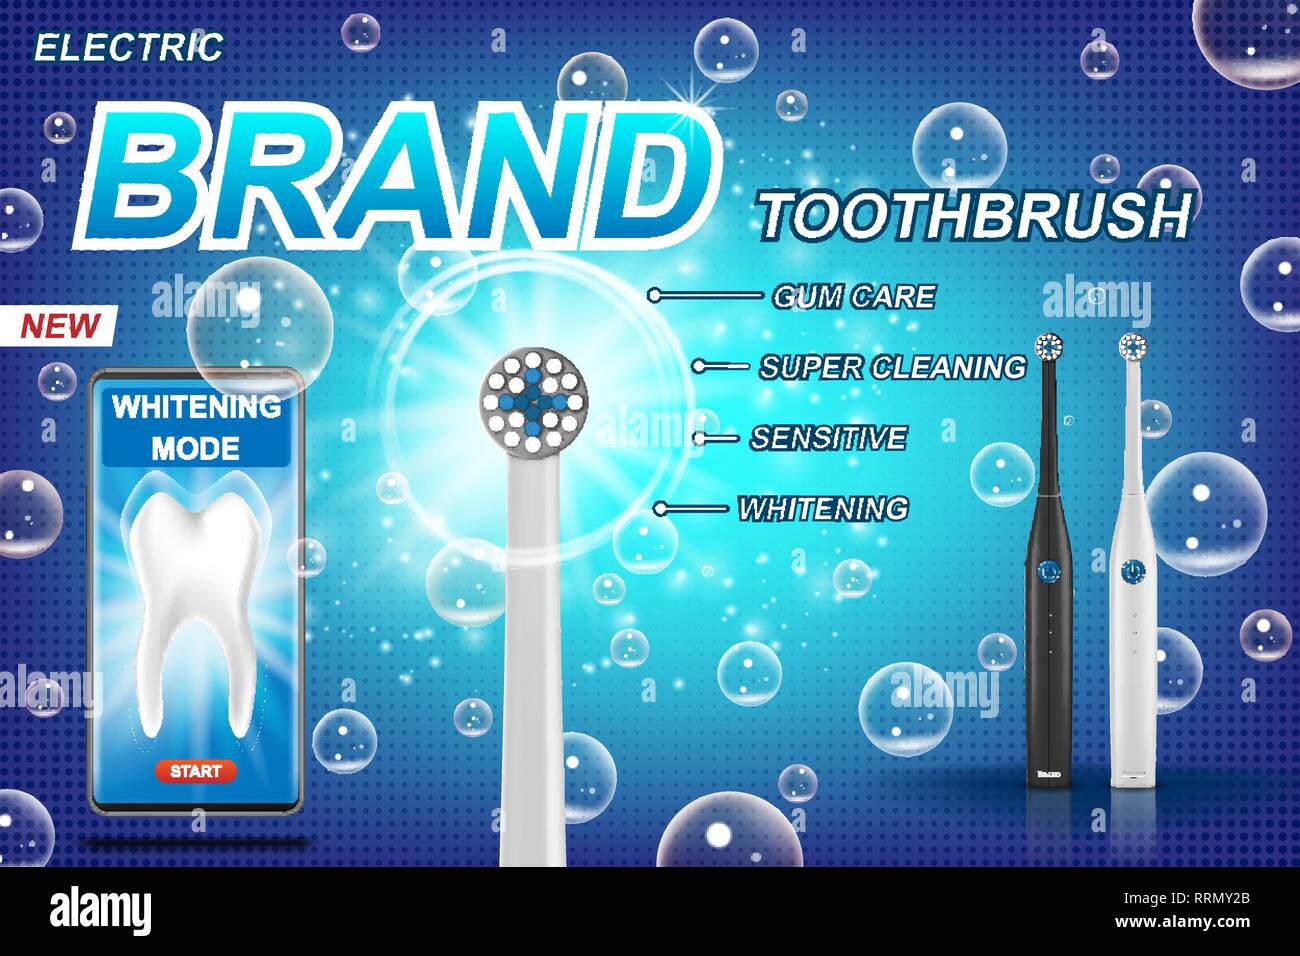 Cepillo dental eléctrico anuncios. vibrante con cepillo dental móvil app. Modelo de diente y el paquete del producto concepto de diseño. 3d ilustración vectorial. Ilustración del Vector